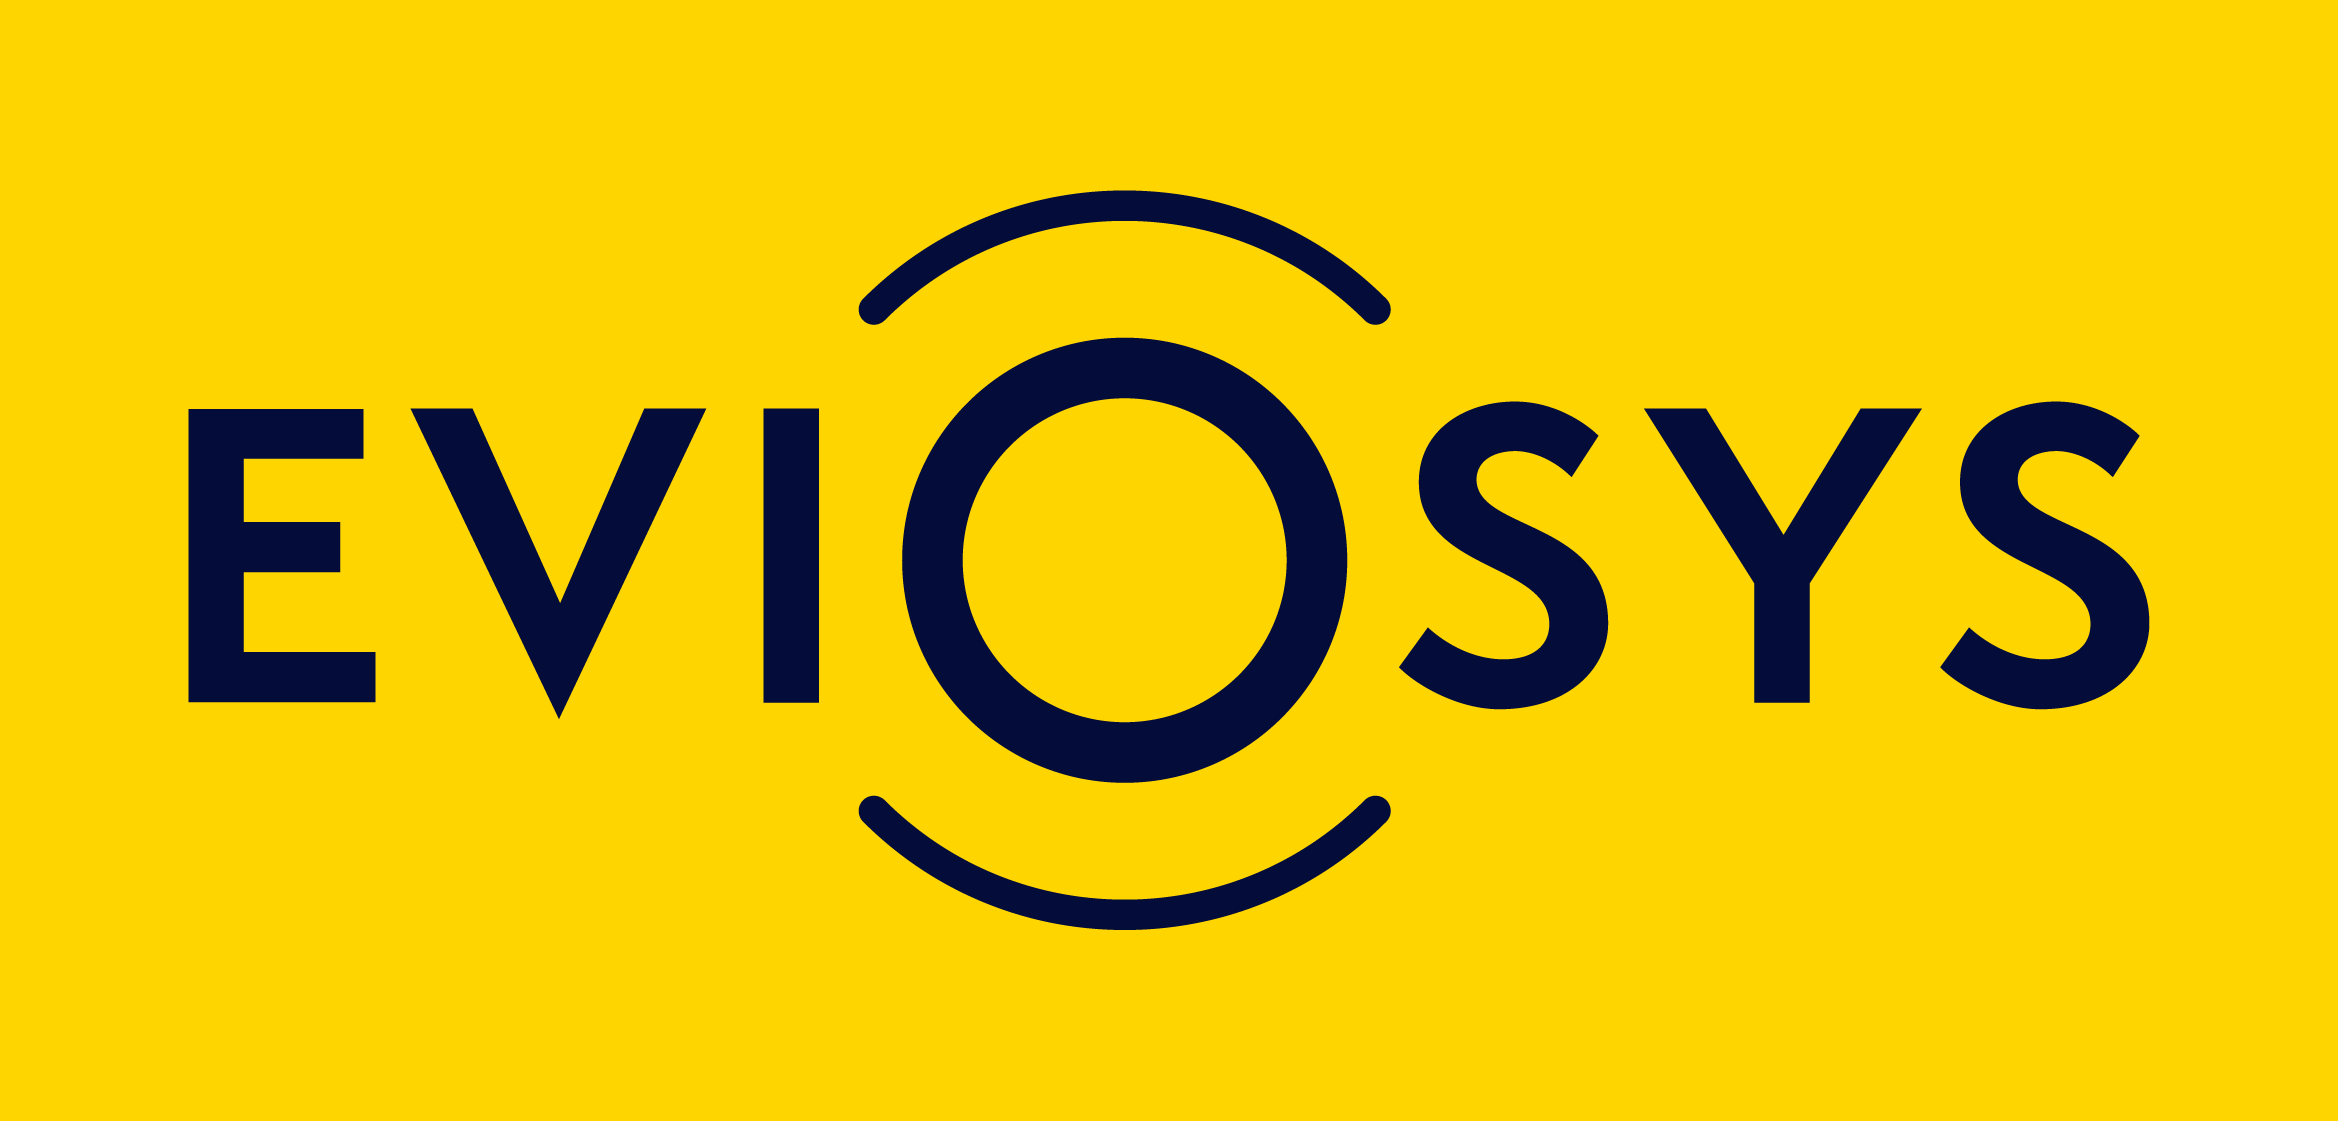 EVIOSYS Logo 